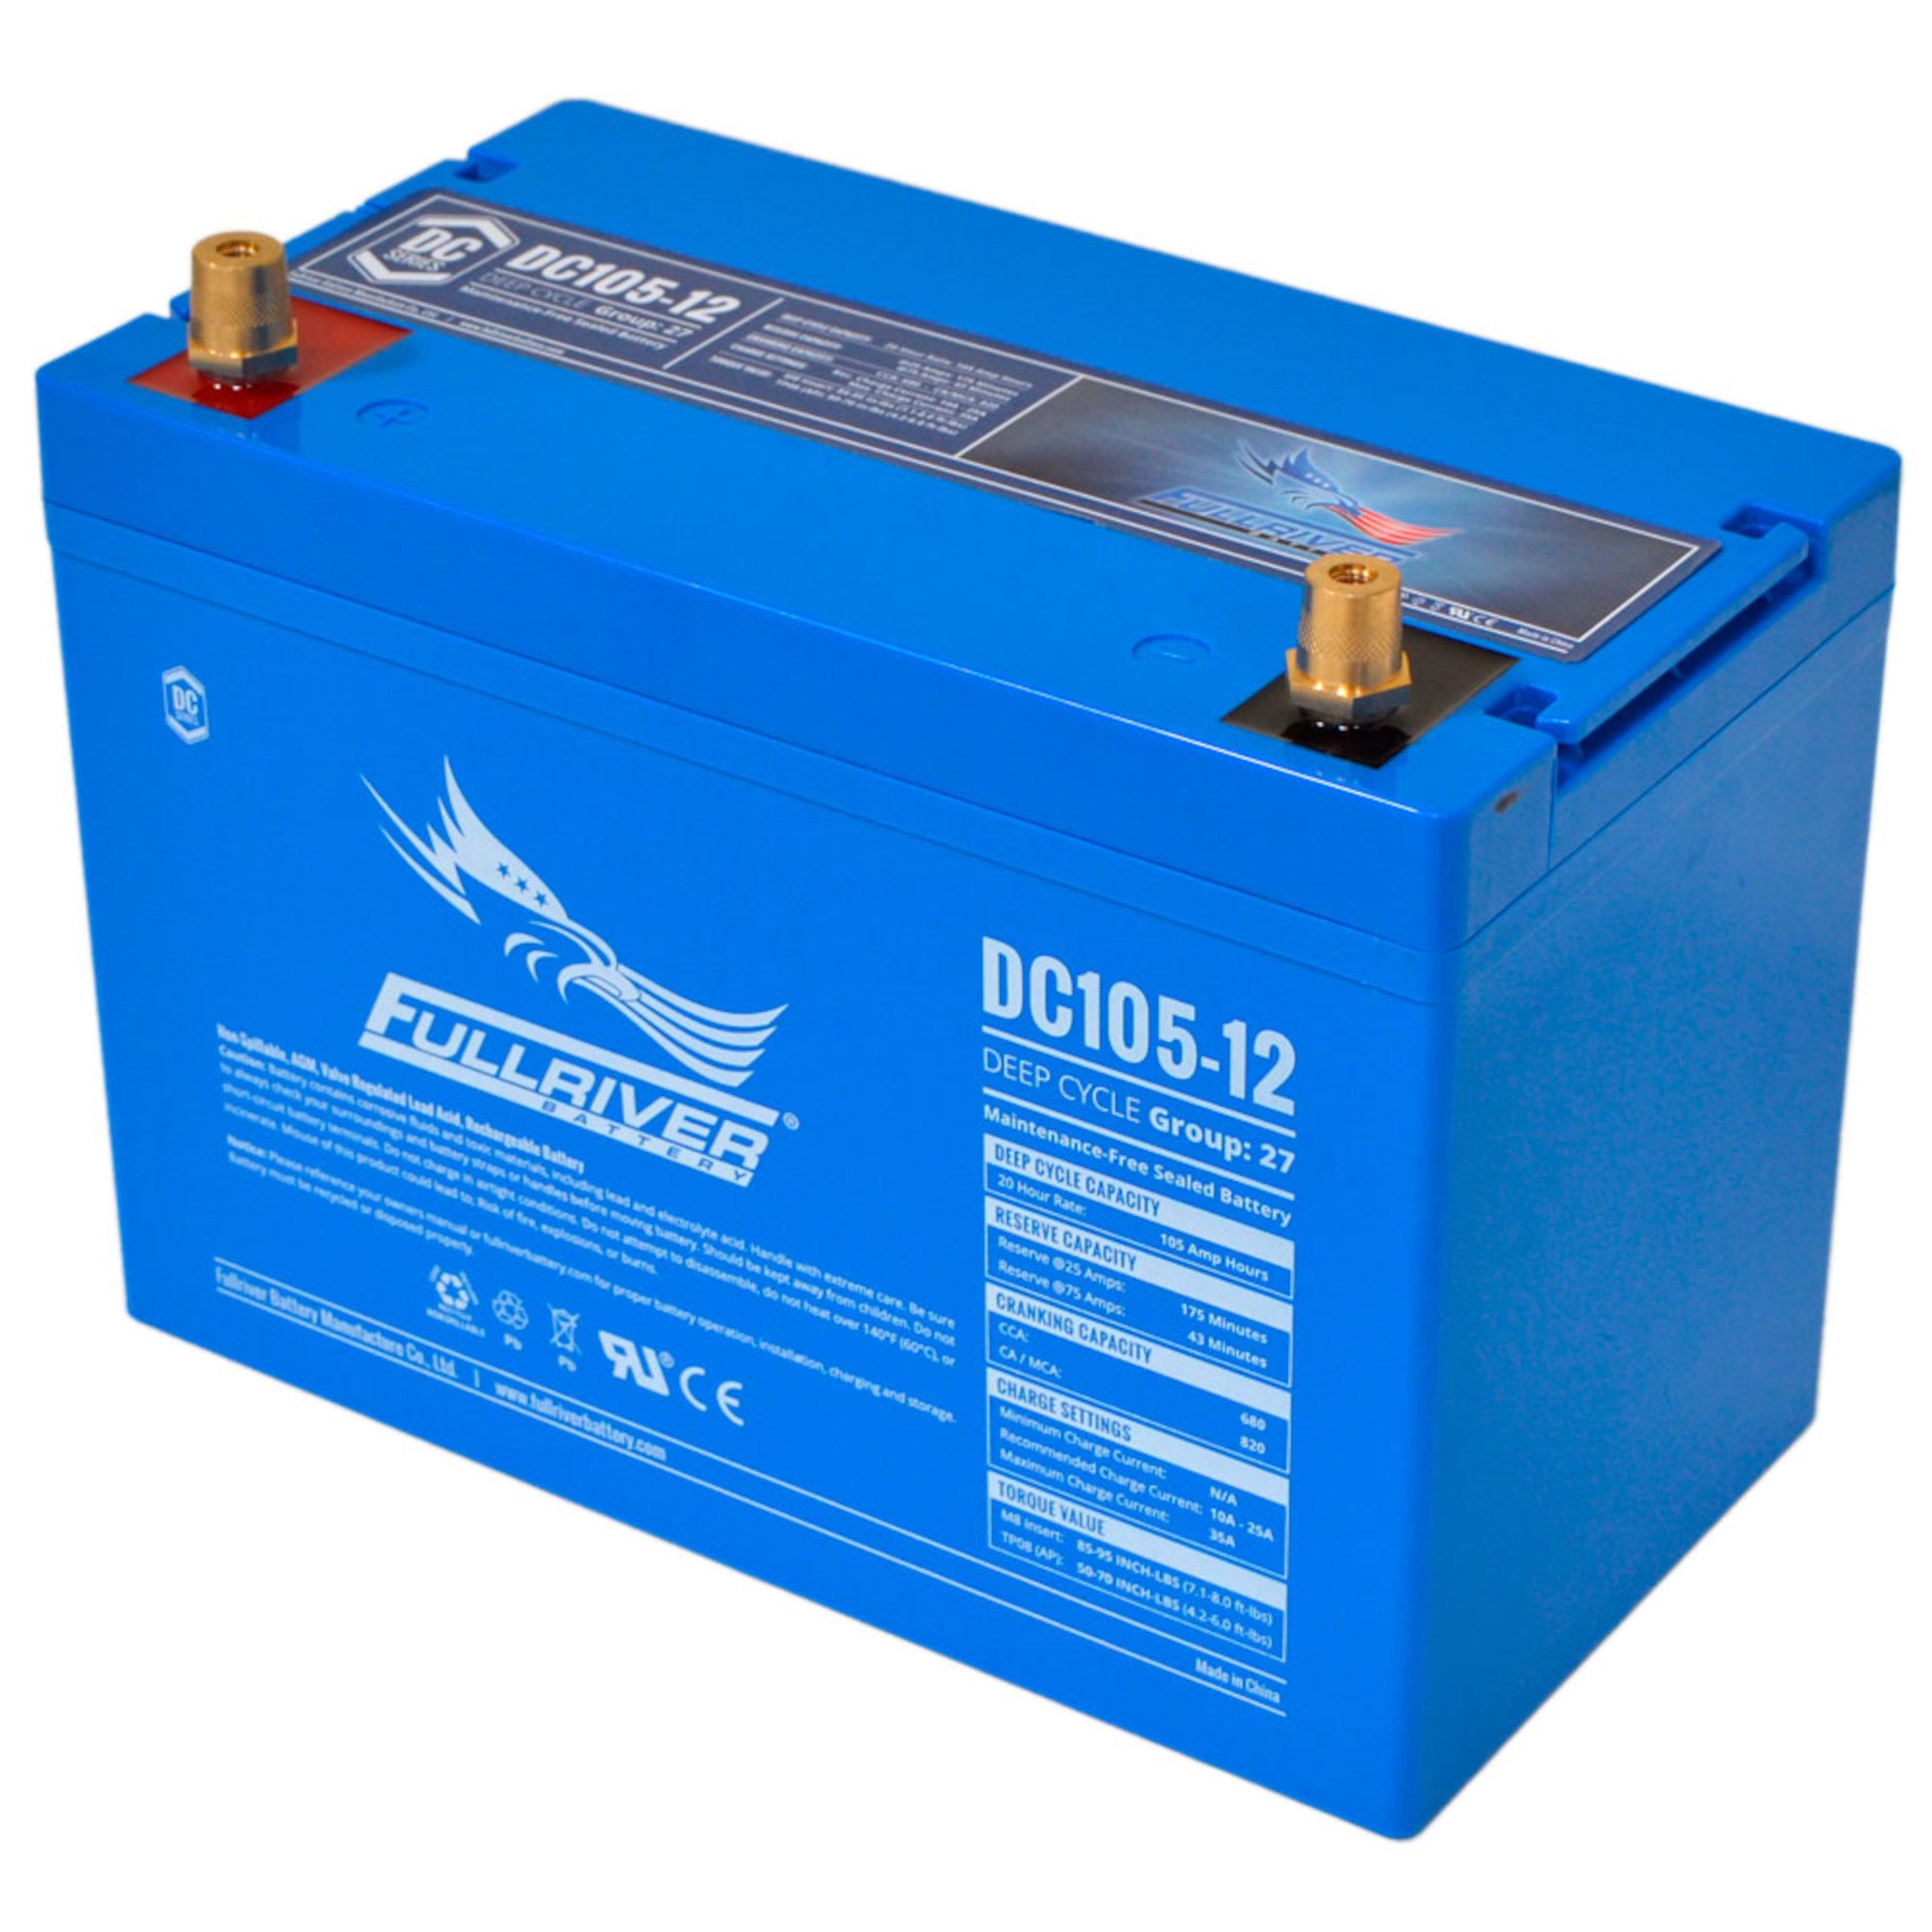 Fullriver DC105-12 AGM Battery